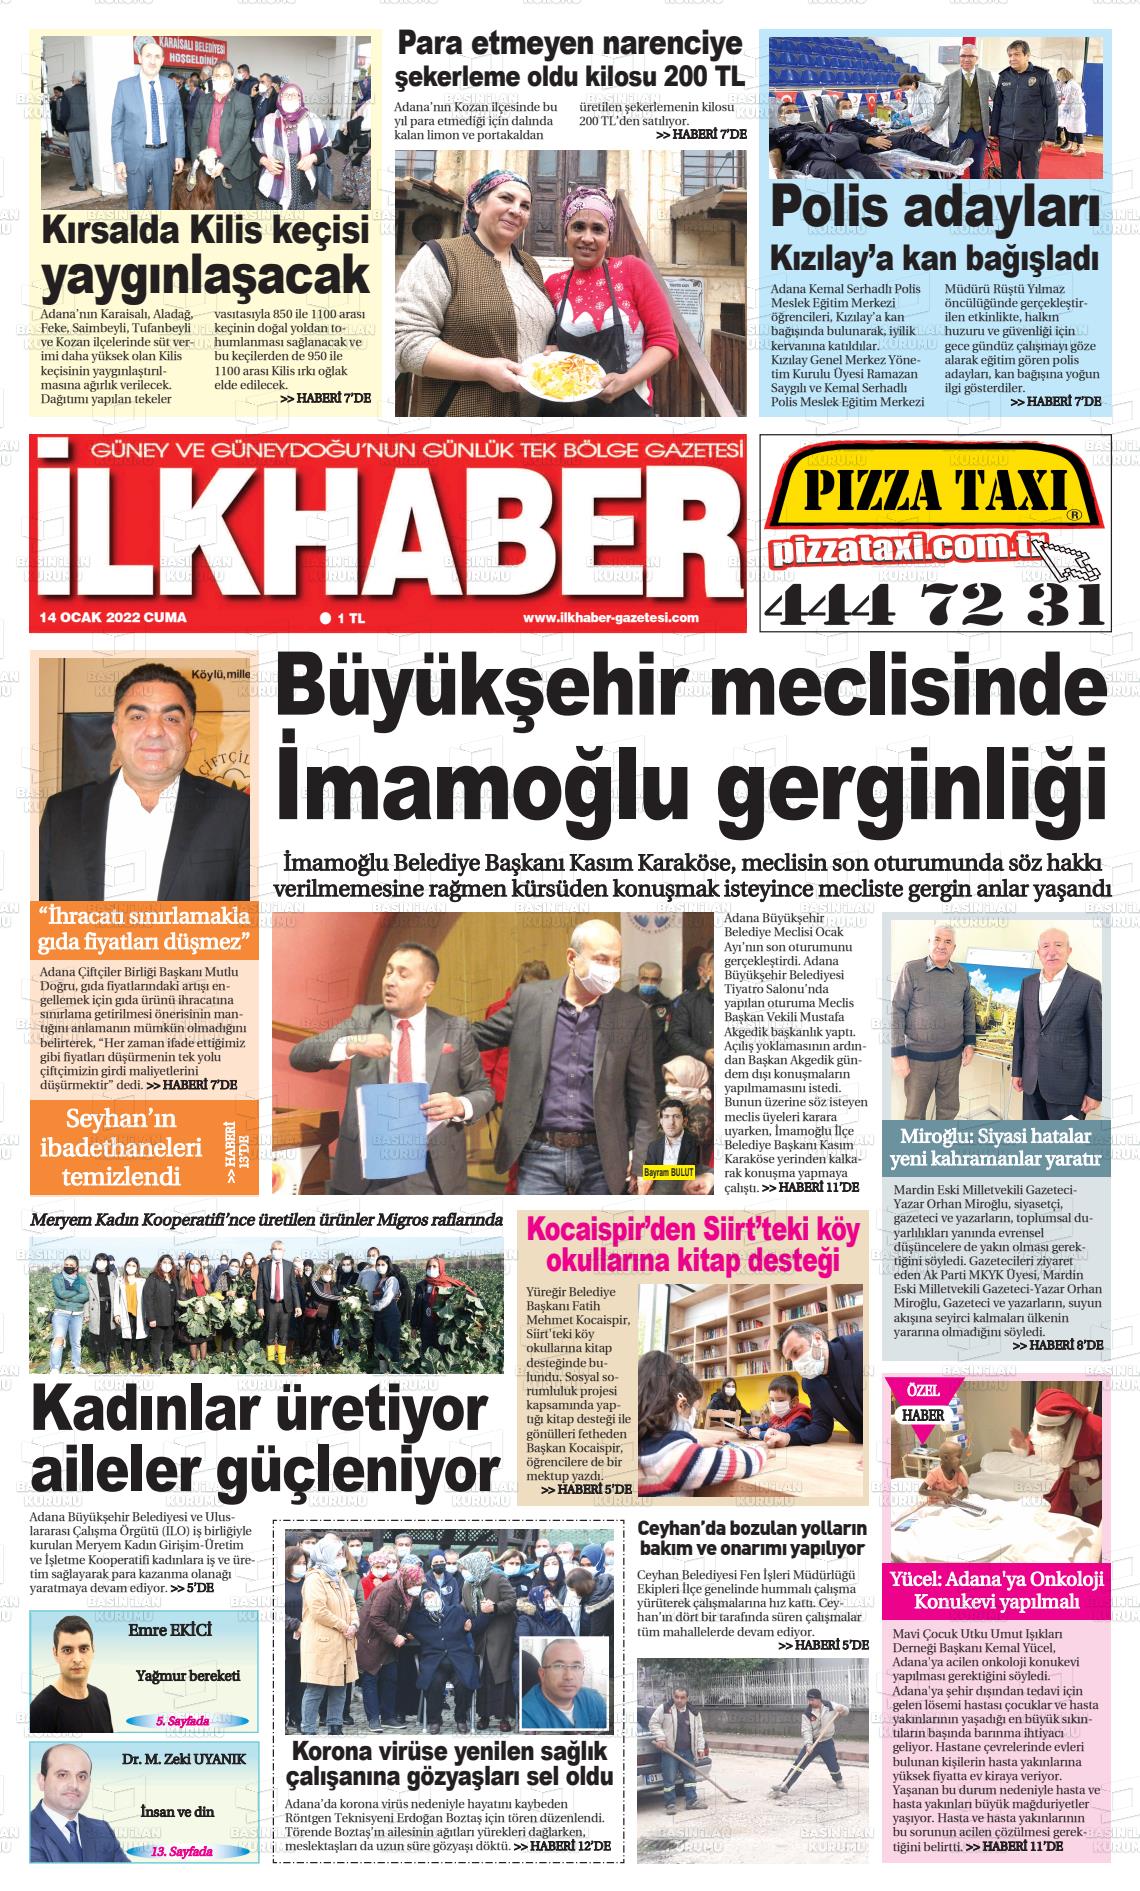 14 Ocak 2022 İlk Haber Gazete Manşeti